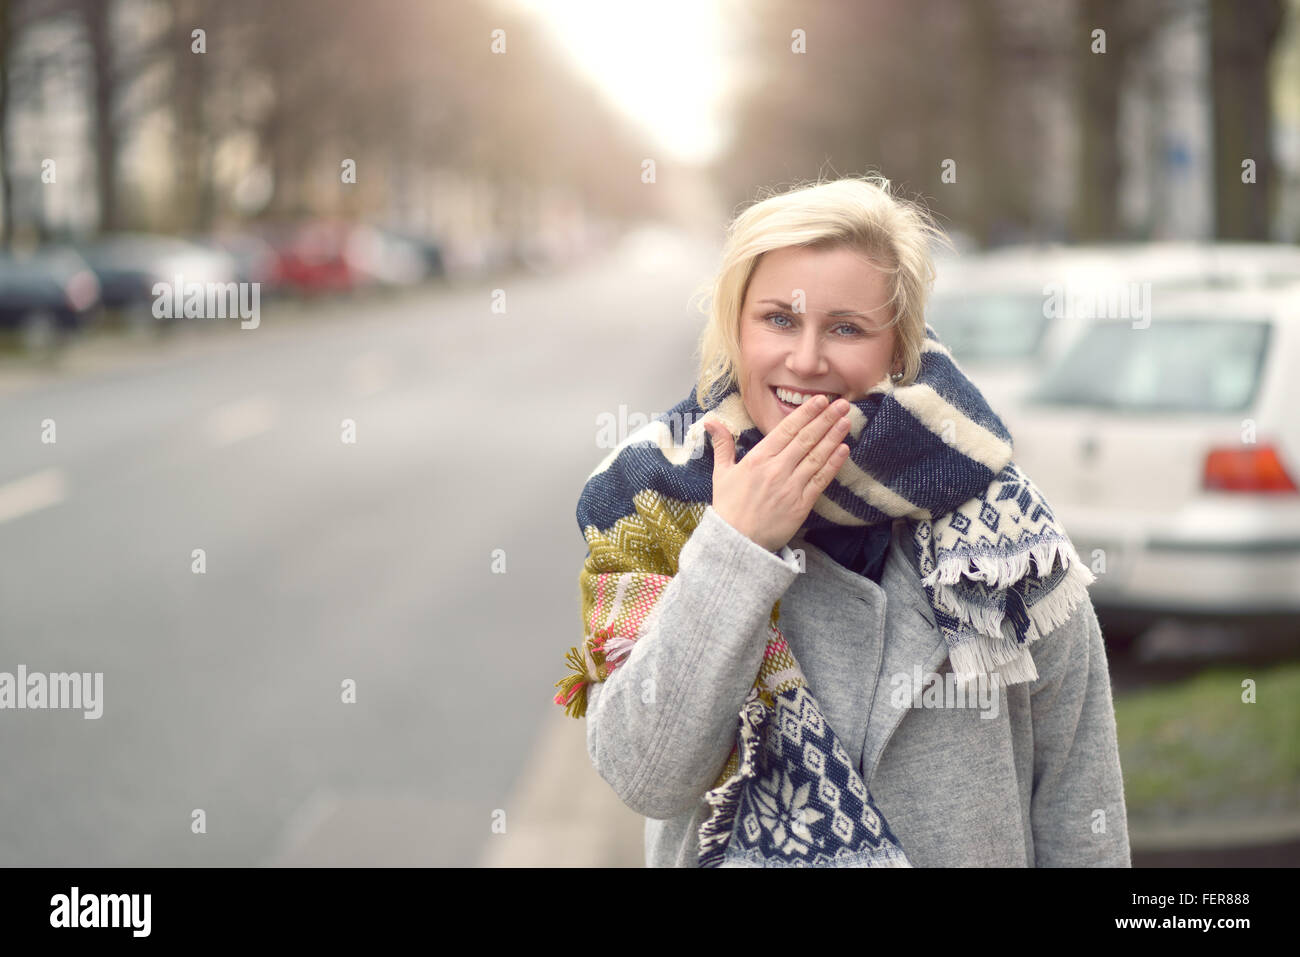 Smiling attractive young blonde woman dans une écharpe laineuse debout à l'autre d'une rue urbaine regardant la caméra, haut du corps Banque D'Images